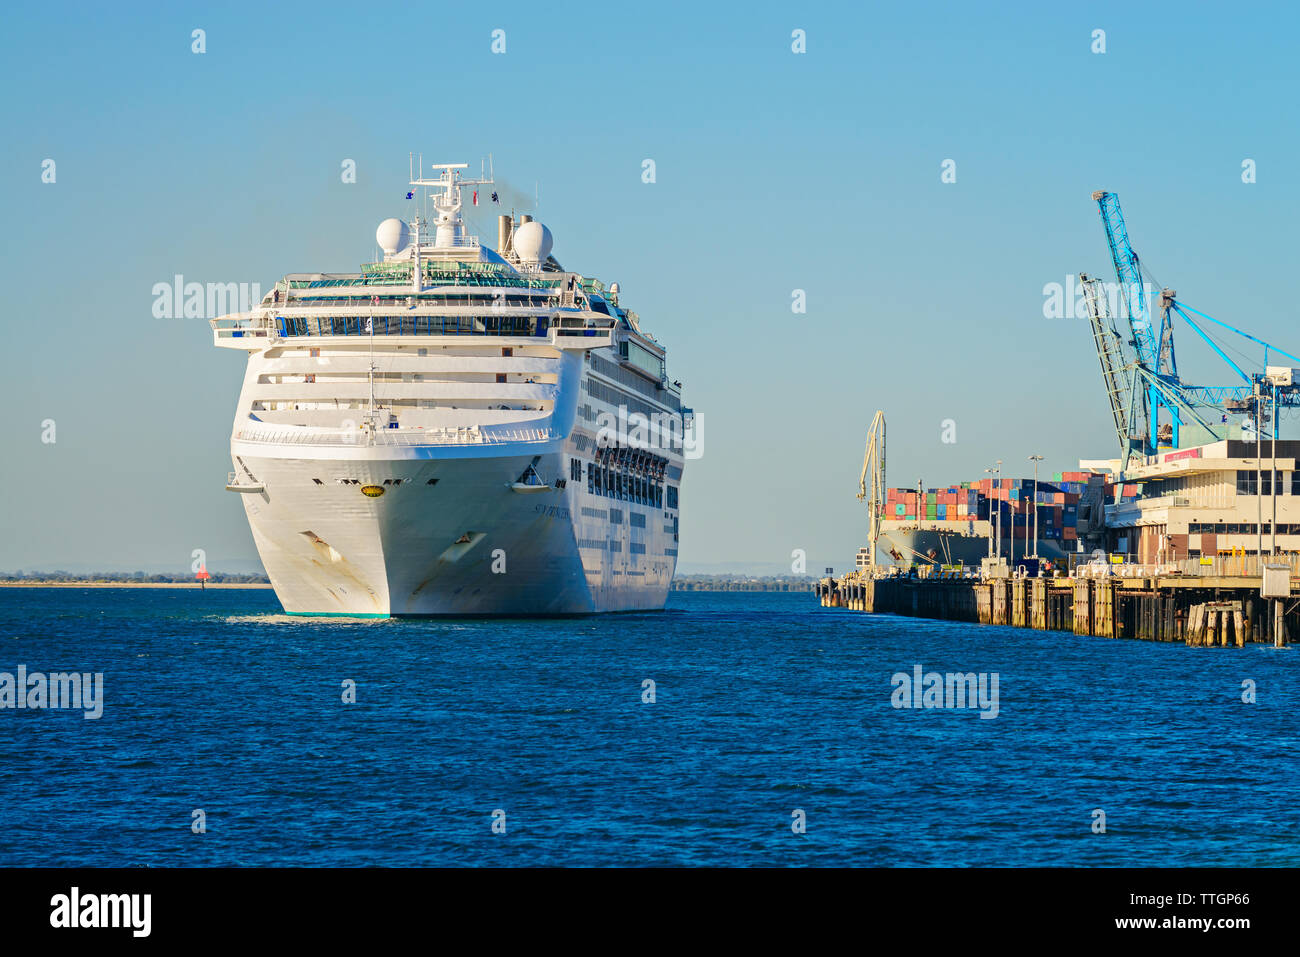 Port Adelaide, South Australia - Oktober 14, 2017: Sun Princess Kreuzfahrt Schiff auslaufen aus äußeren Hafen Passenger Terminal am späten Nachmittag Stockfoto